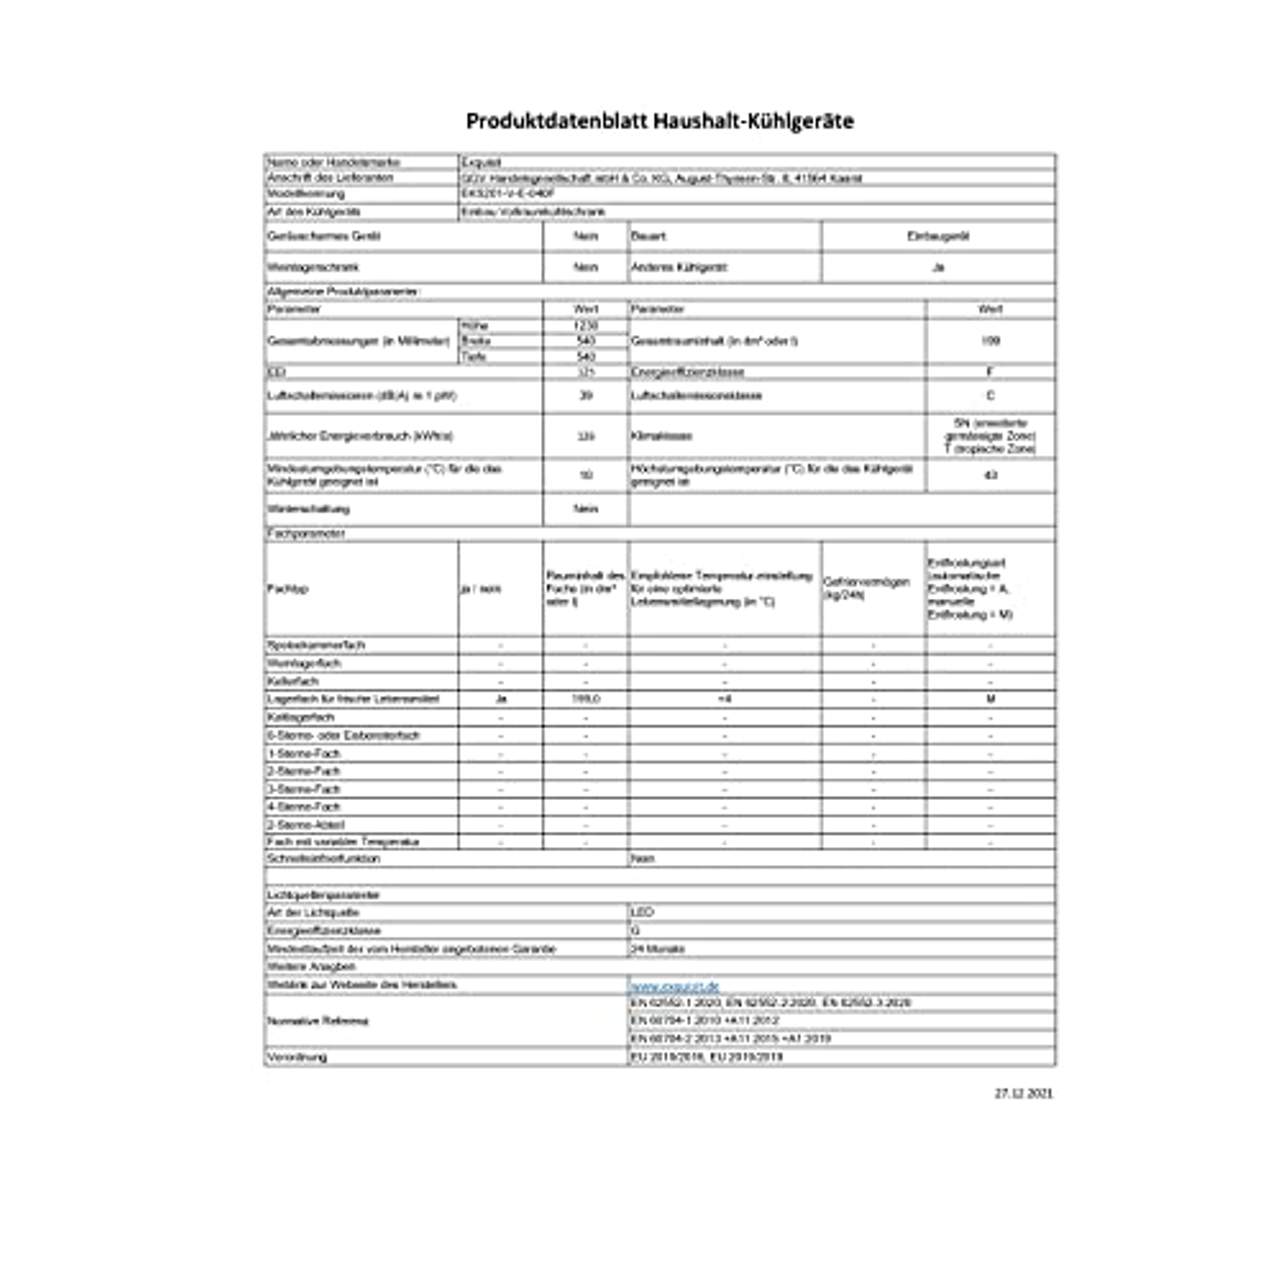 Exquisit Einbau-Vollraumkühlschrank EKS201-V-E-040F 